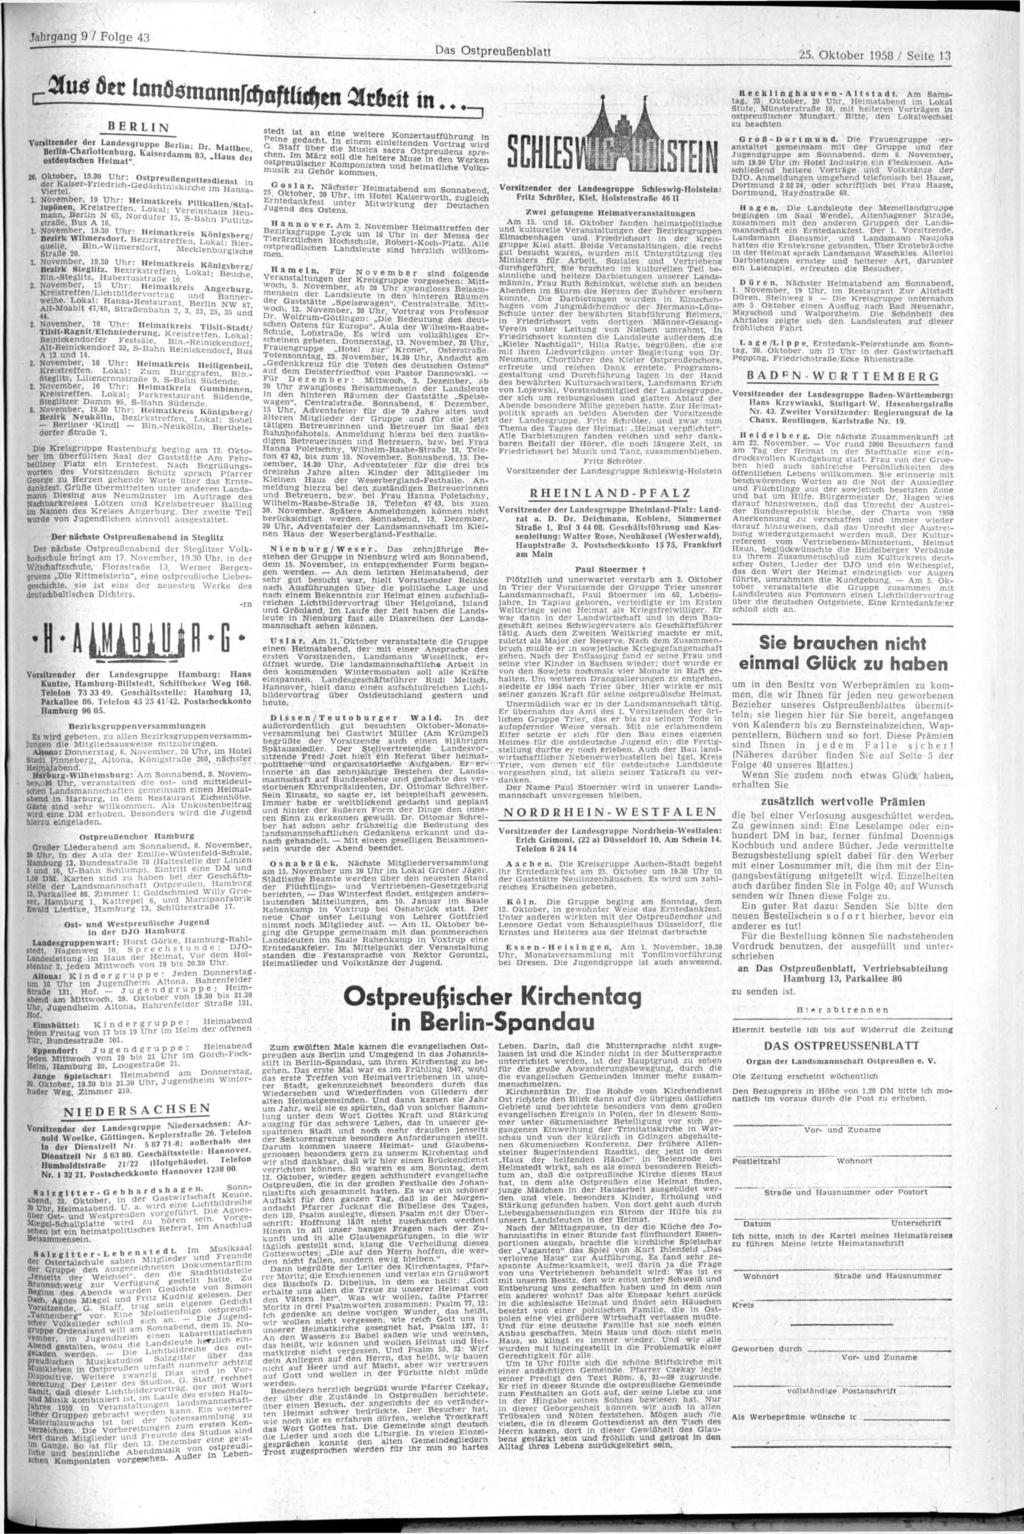 Das Ostpreußenblatt 25. Oktober 1958 / Seite 13 BERLIN Vorsitzender der Landesgruppe Berlin- Dr Matthe Berlin-Charlottenburg. Kaiserdamm 83 Ä " ostdeutschen Heimat". ' " H a u s d e r 28. Oktober, 15.